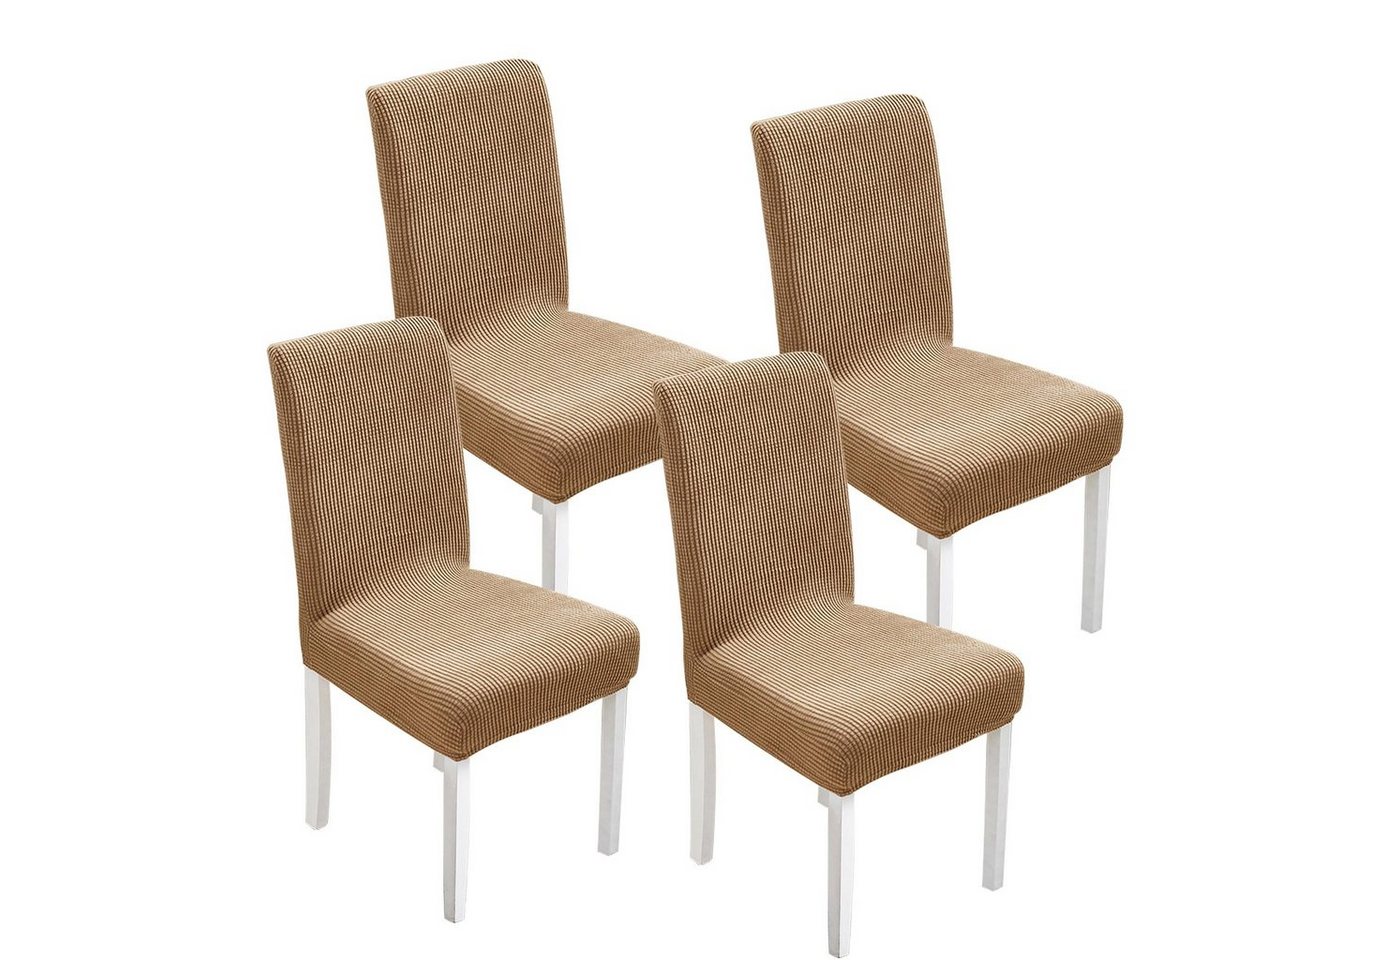 Sitzflächenhusse Universal Stuhlbezug Stretch Stuhl hussen Hochwertiger Stretchstoff, MULISOFT, Stretch-Stuhlhussen, abnehmbar, waschbar,4er-set von MULISOFT